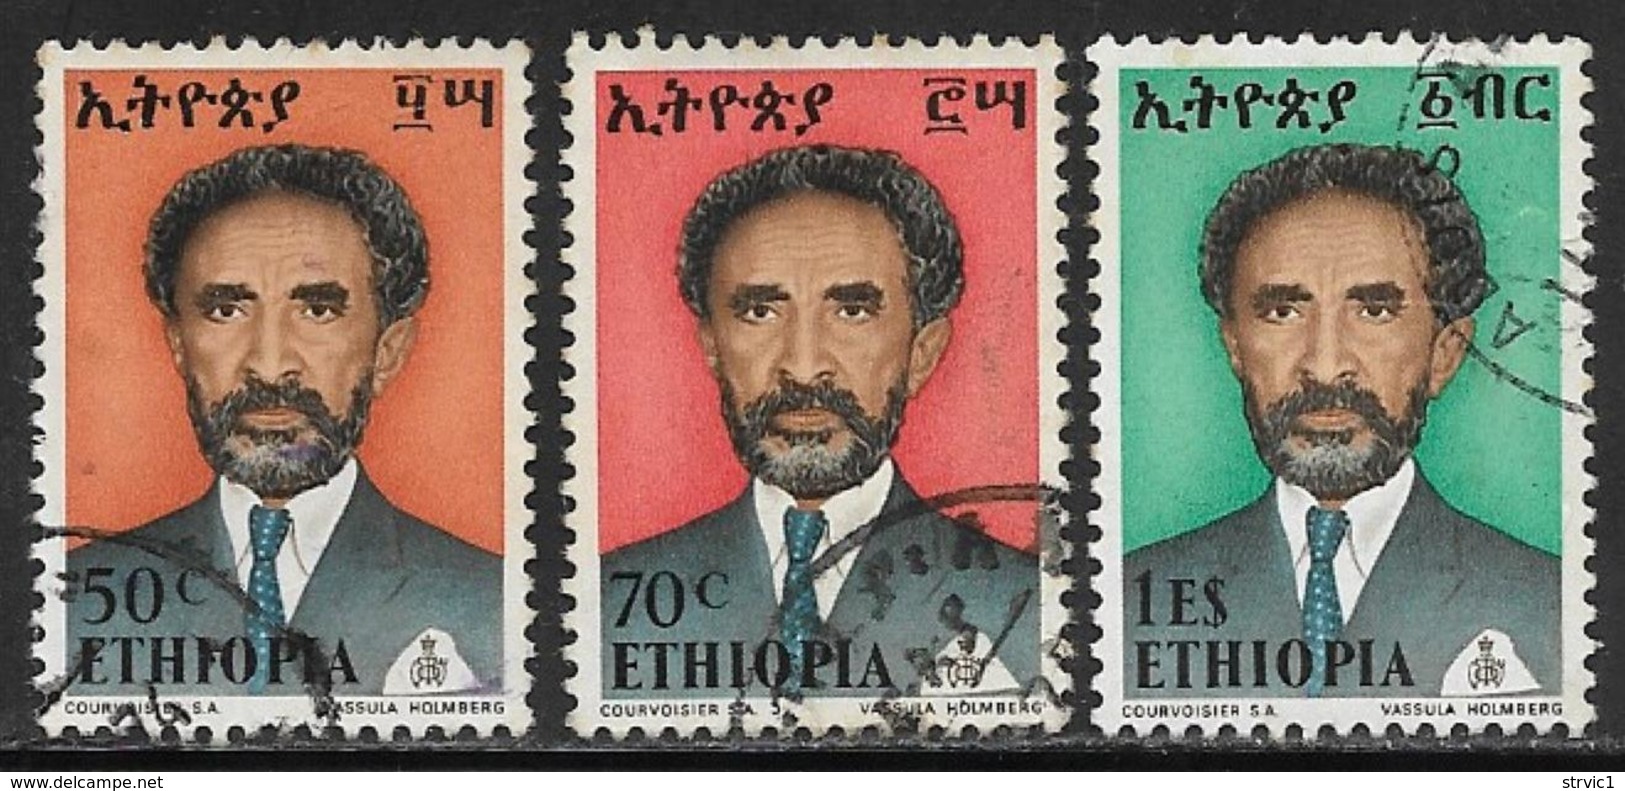 Ethiopia Scott # 681,684,686 Used Selassie, 1973 - Ethiopia